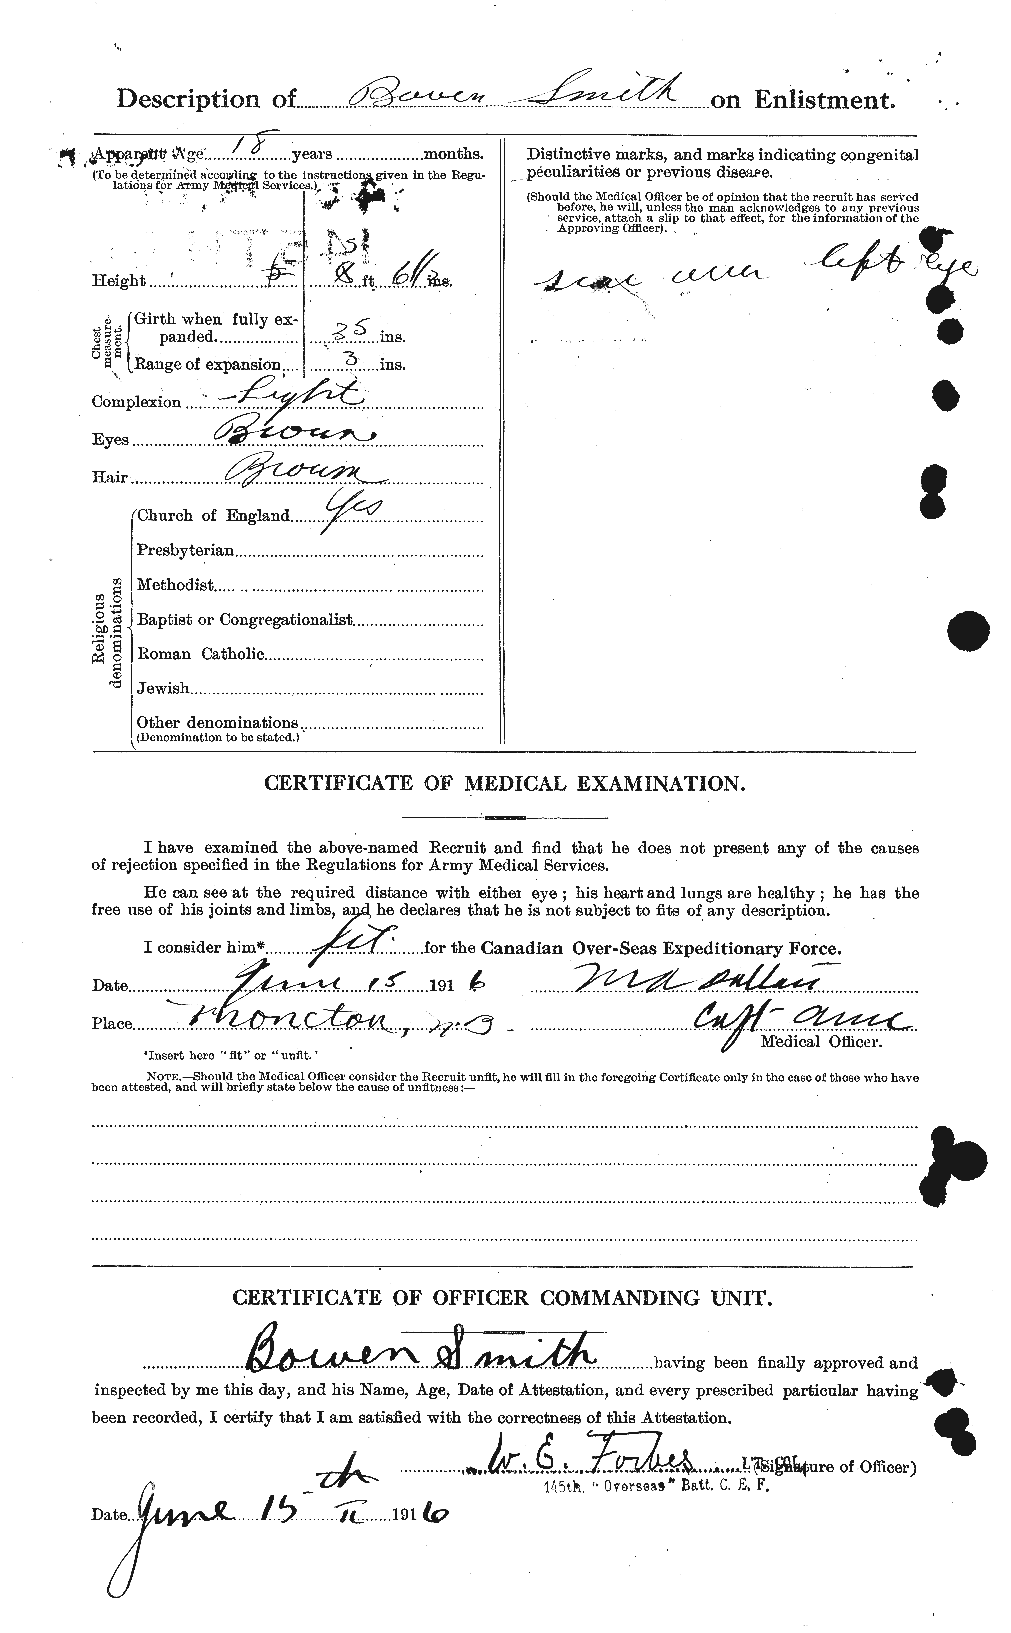 Dossiers du Personnel de la Première Guerre mondiale - CEC 100834b